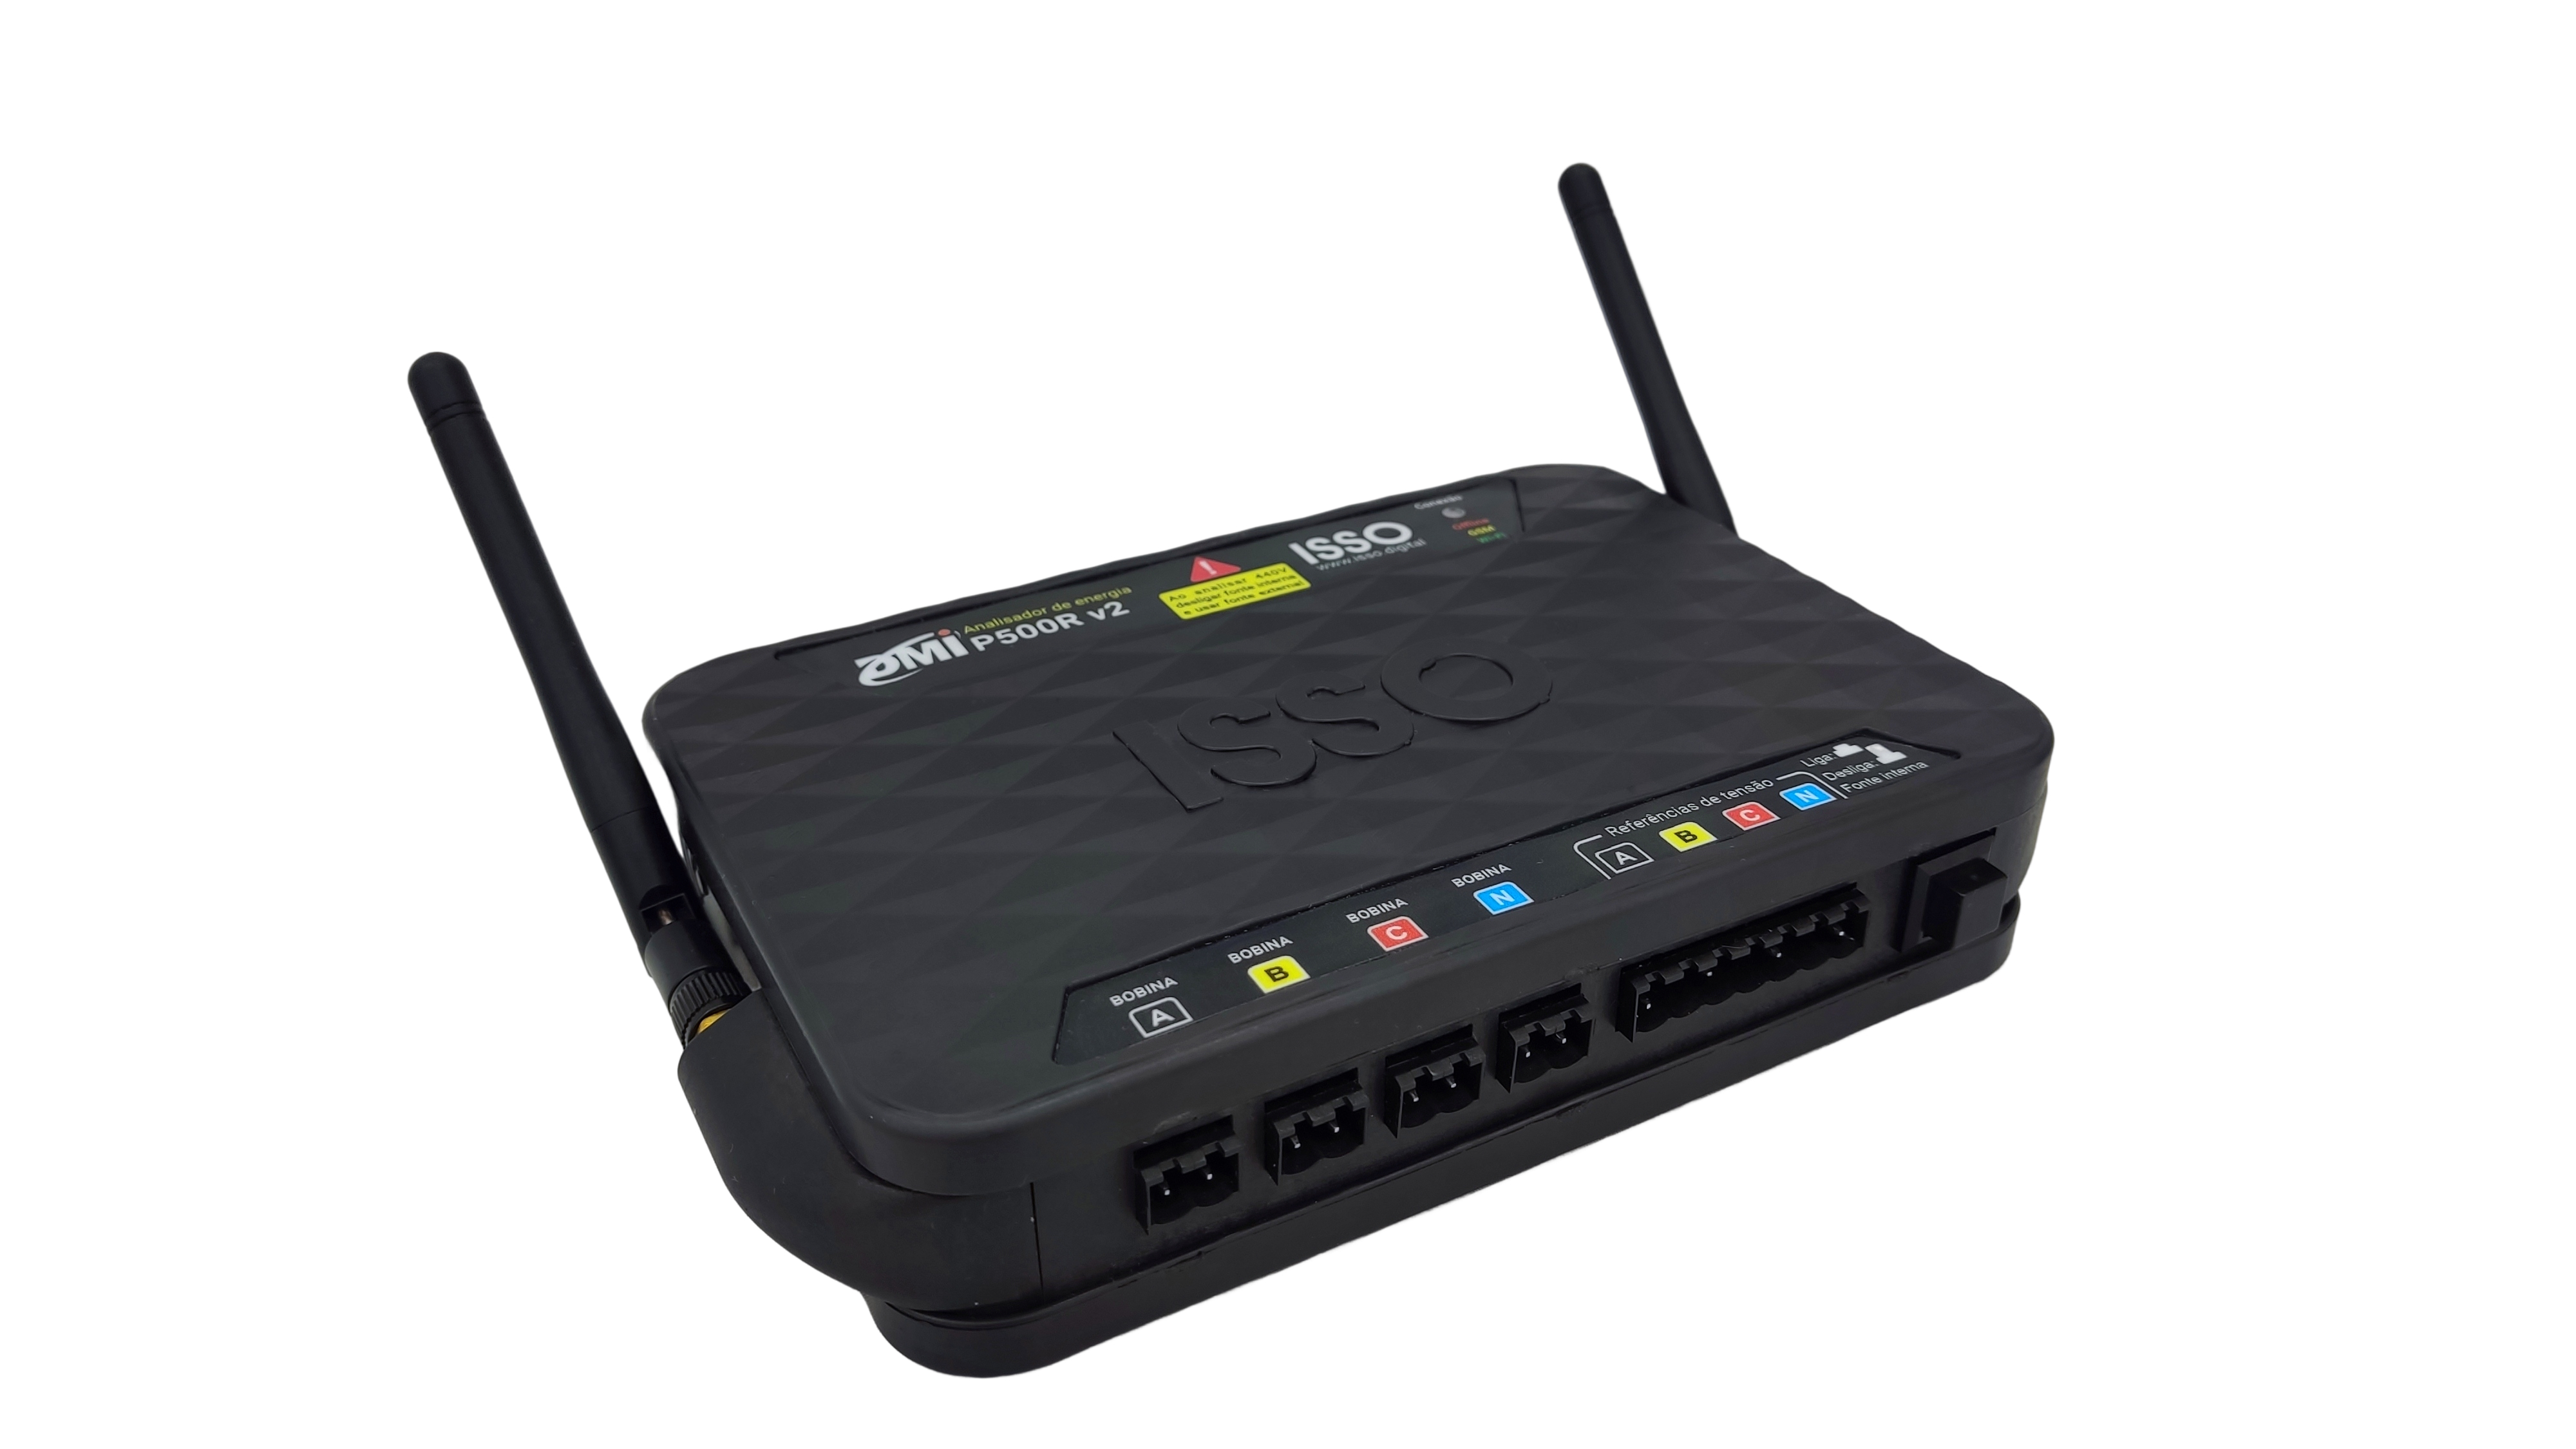 Analisador de qualidade de energia DMI P500R Black Box, Multimedição de energia elétrica, sistema online, wifi GSM LAN 